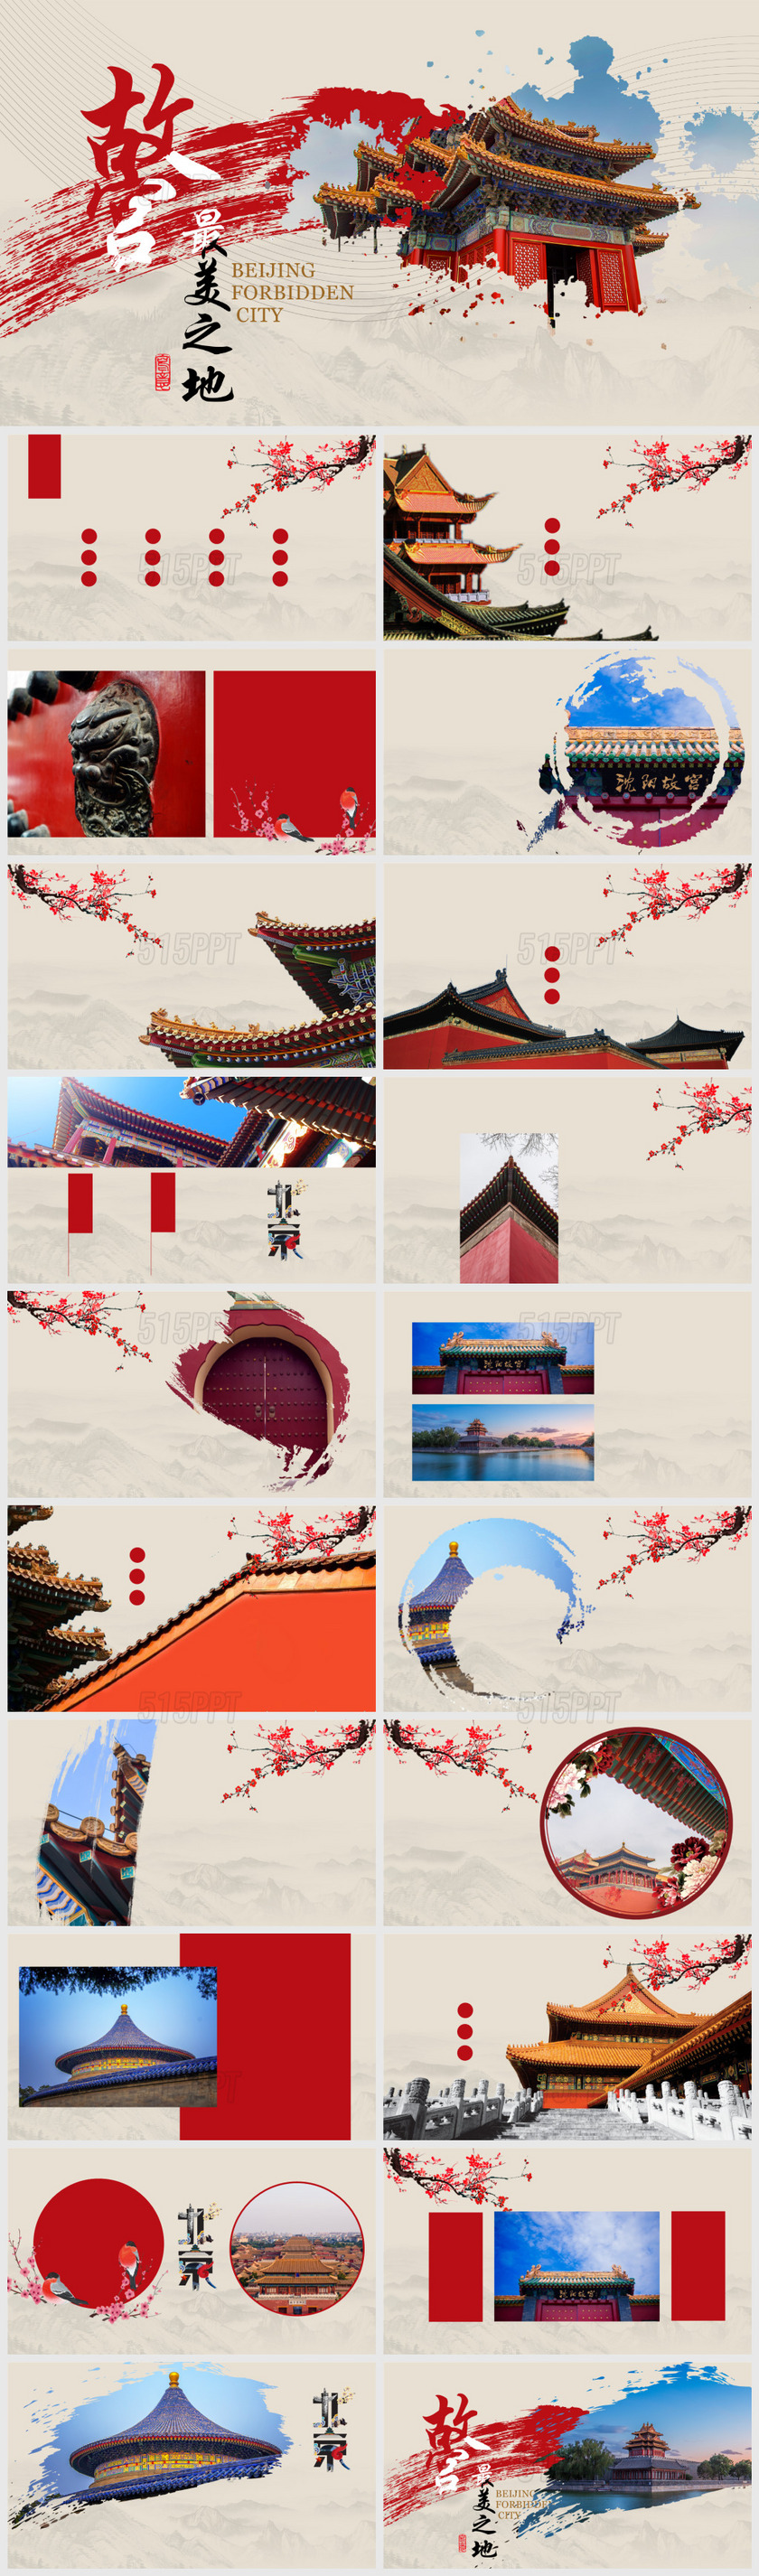 古典大气北京故宫画册通用旅游宣传传统文化PPT模板